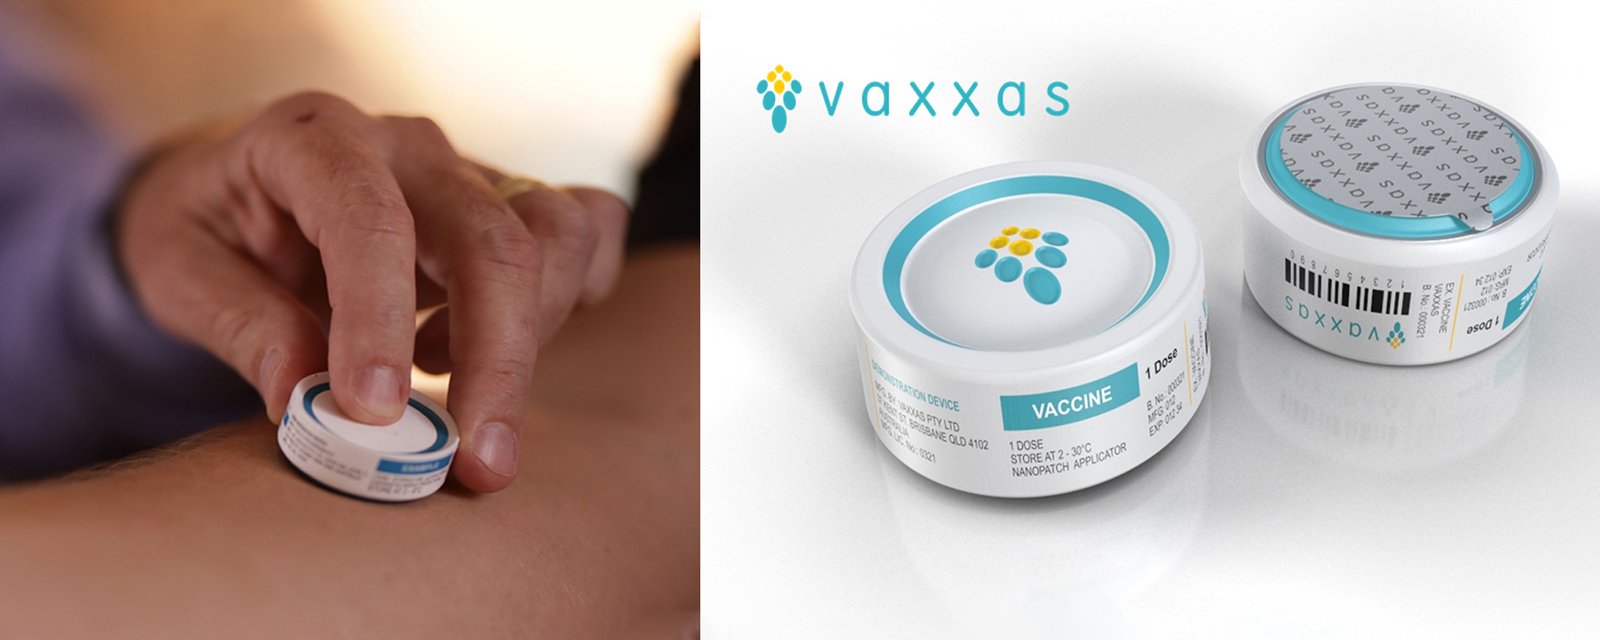 Image Caption: Vaxxas’ needle-free device